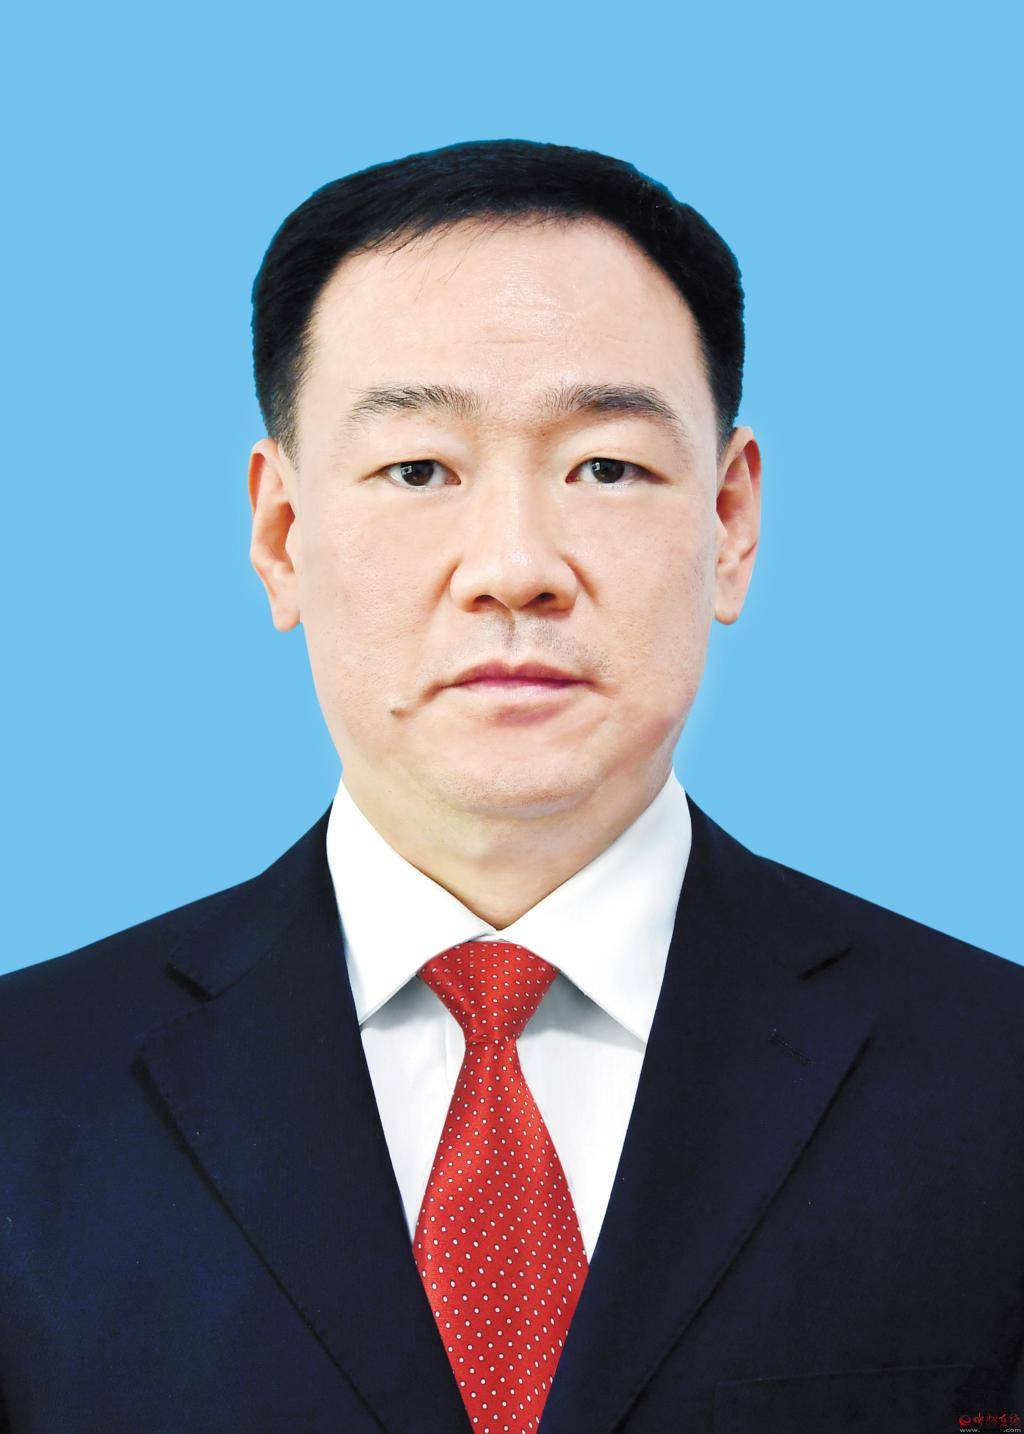 市长李建国,男,汉族,1971年2月生,大学,中共党员,现任忻州市委副书记